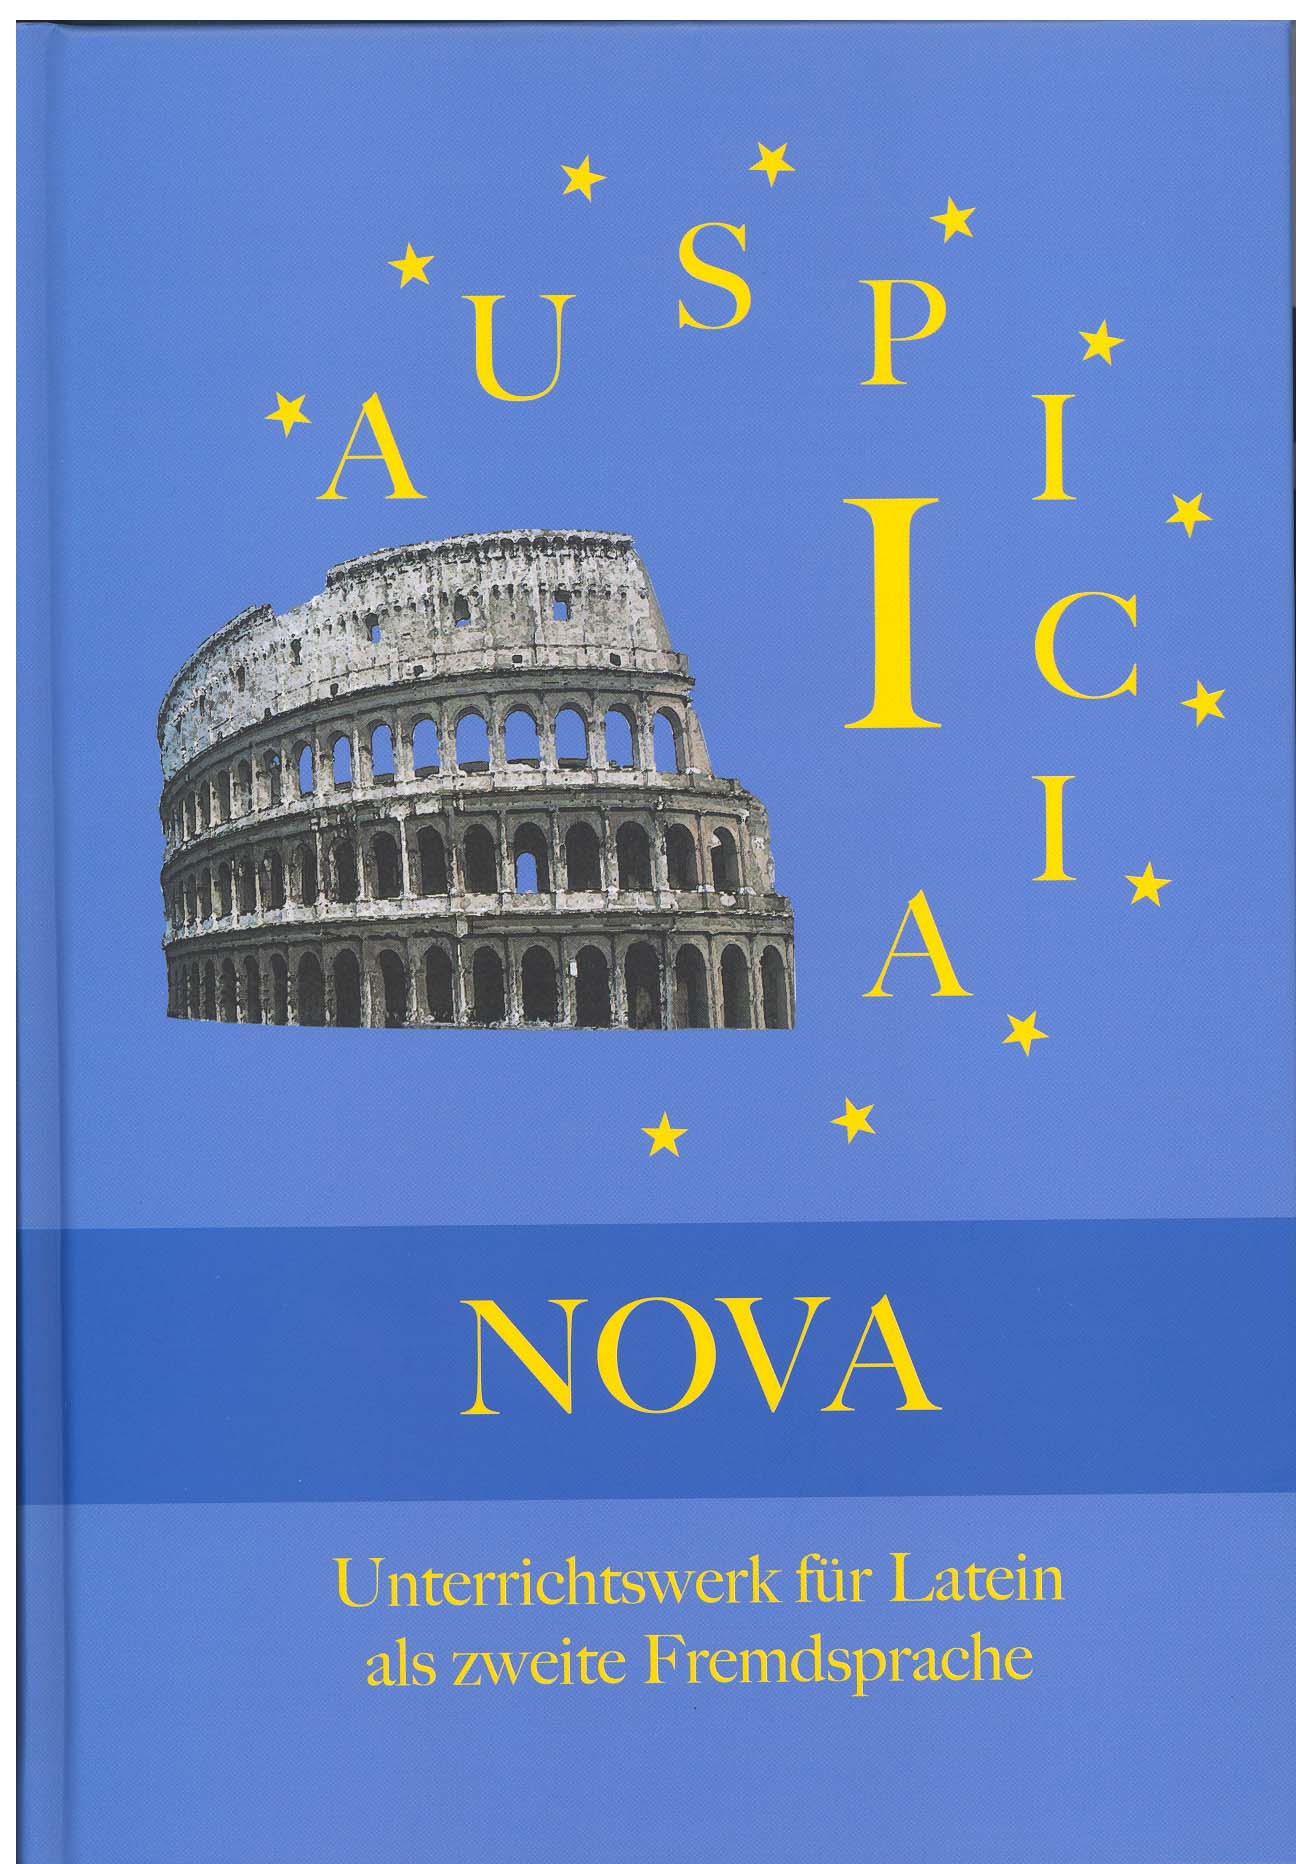 Das Cover zur Buchreihe Auspicia Nova von Lappersdorf zum Lernen der Vokabeln in der Sprache Latein. Der Vokabeltrainer phase6 classic ist die beste App für bessere Noten.